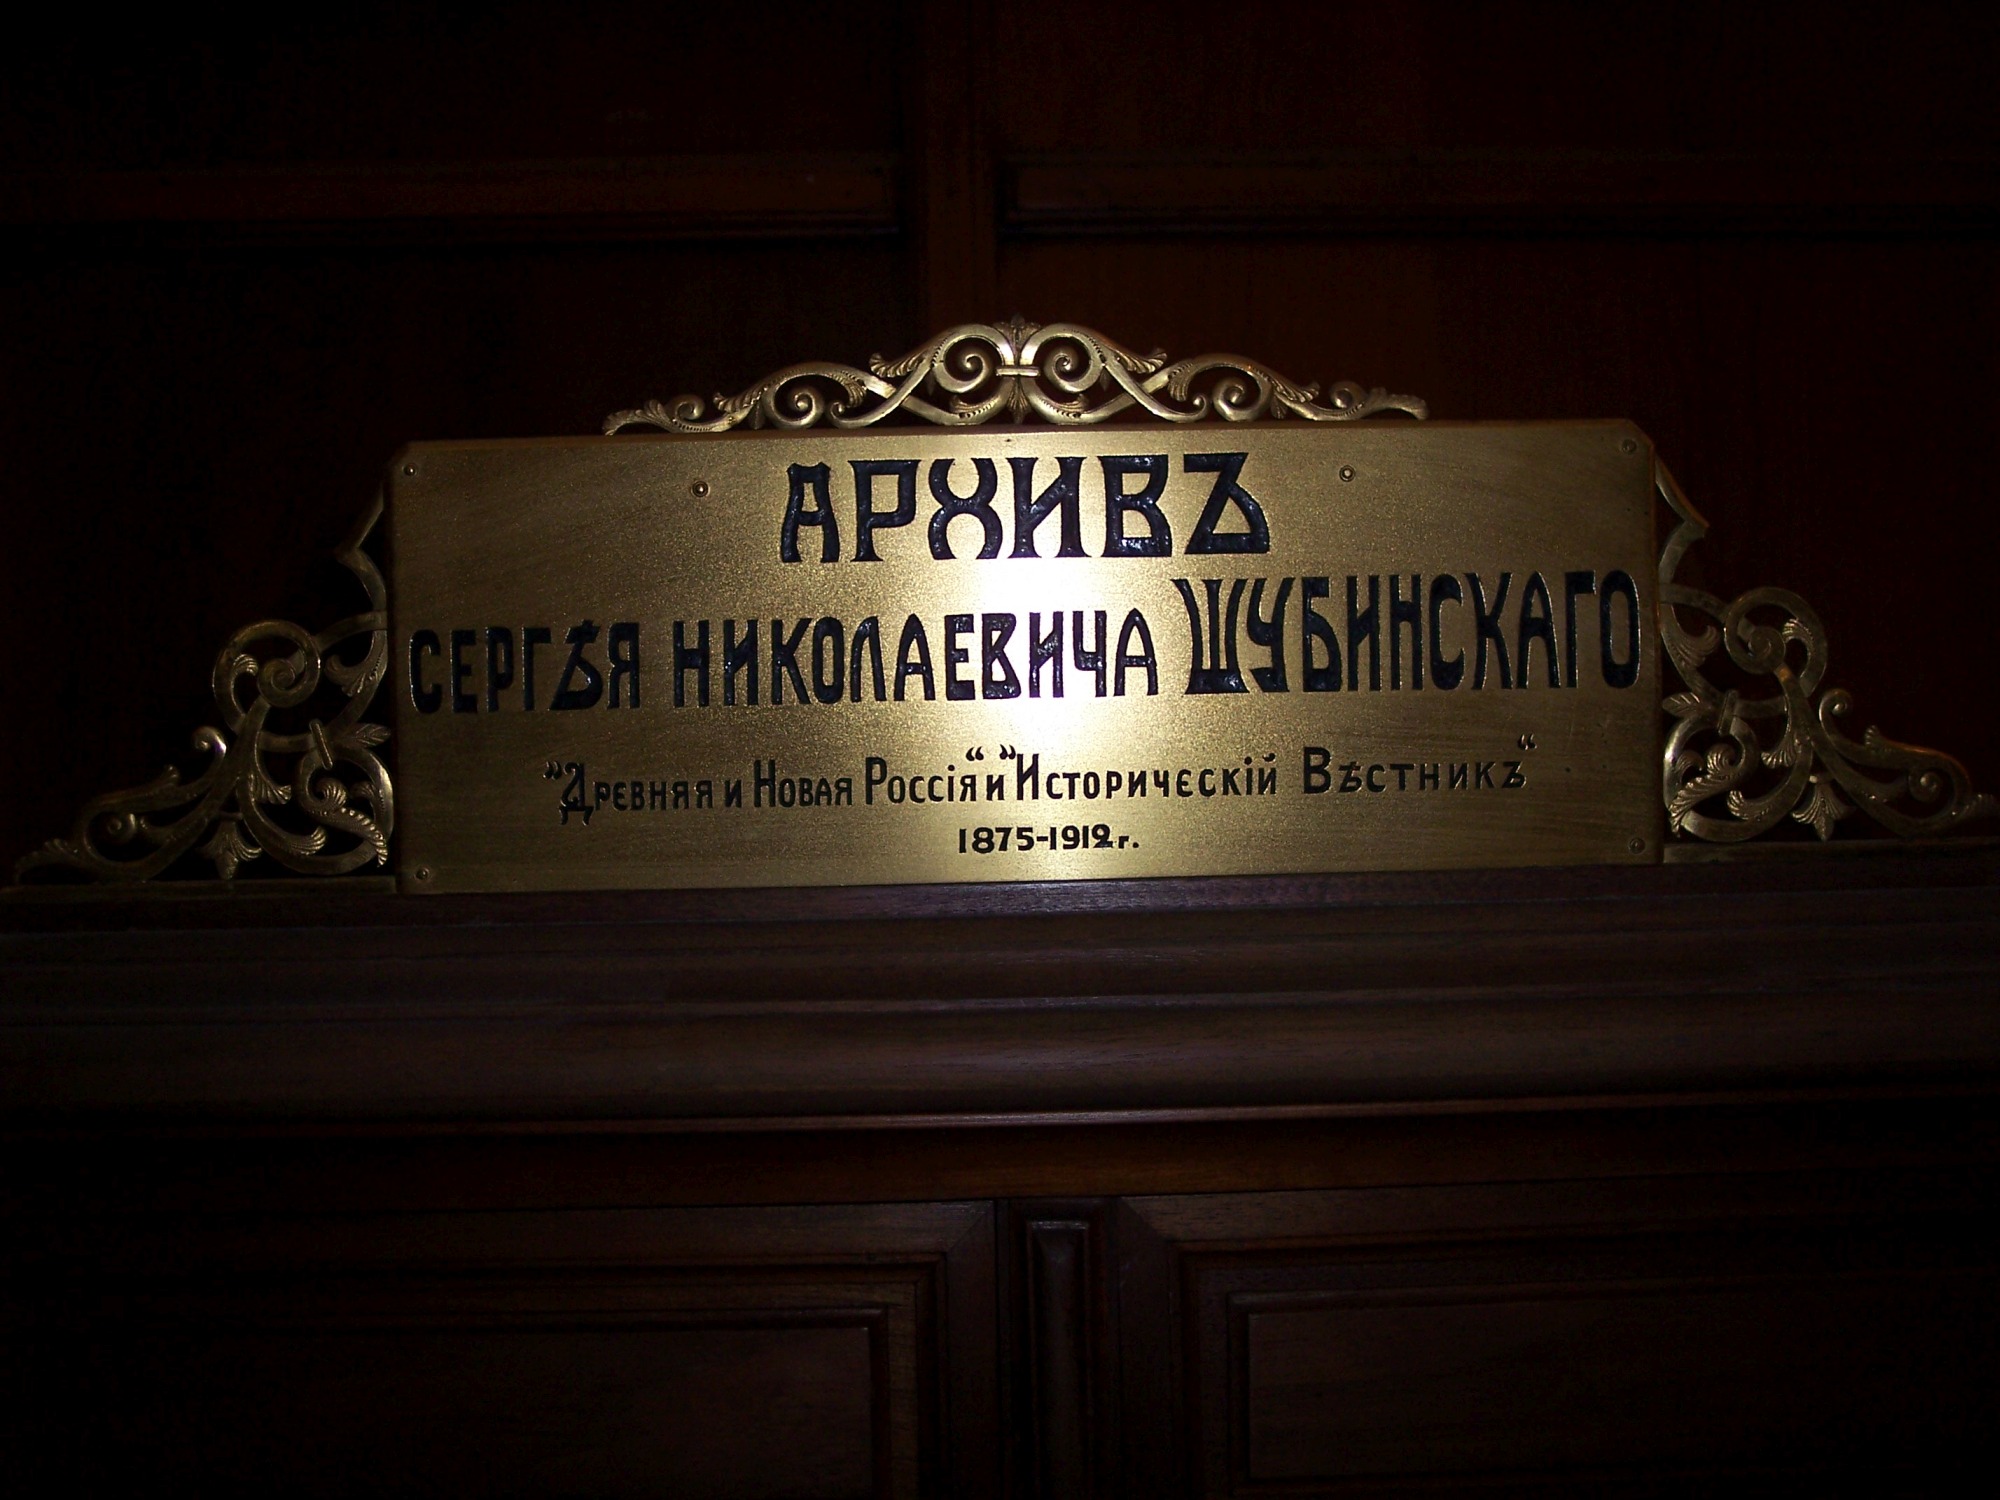 Archive of Sergei Shubinsky